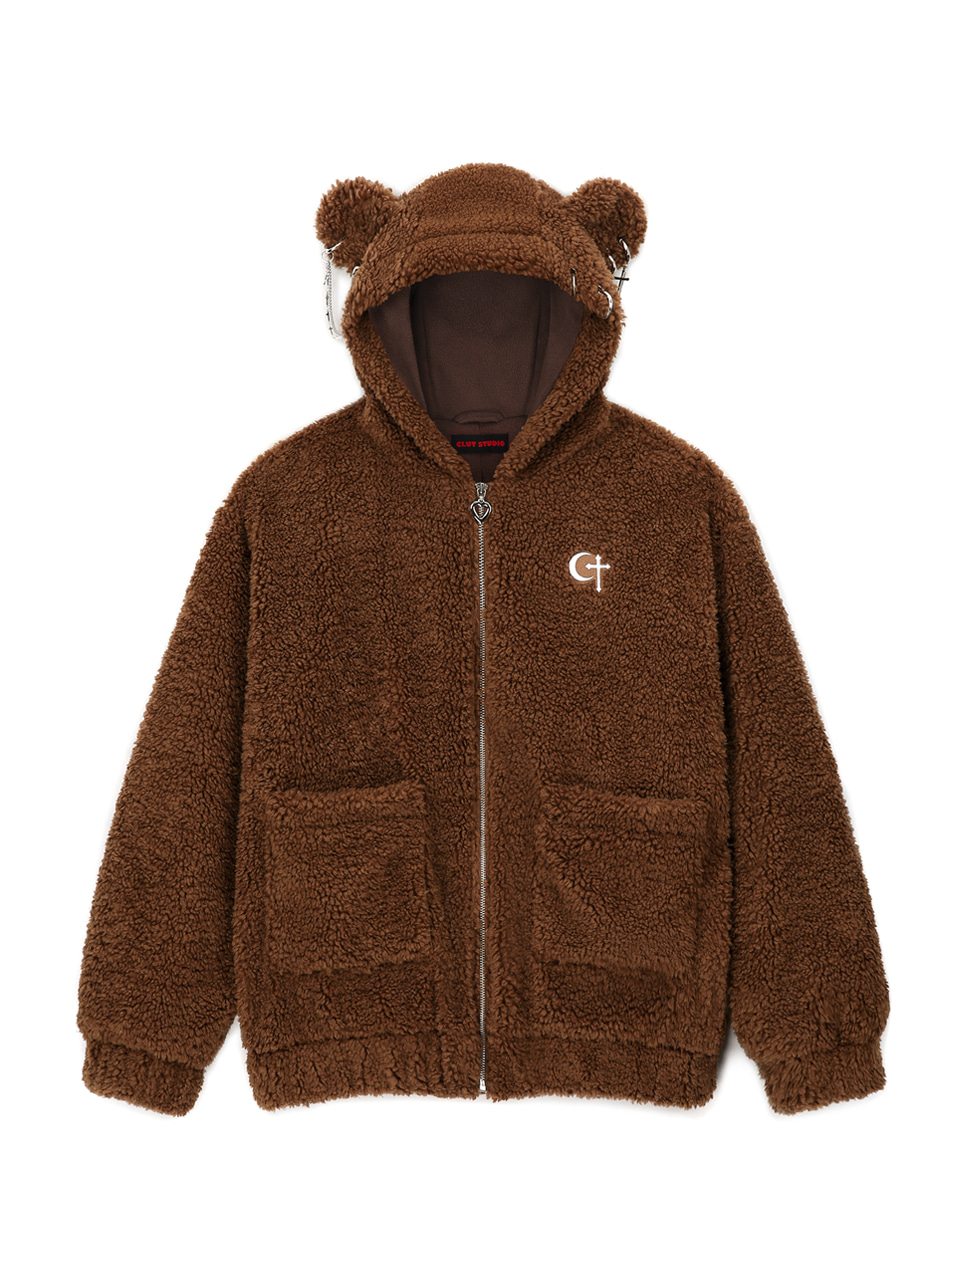 [12/23 예약배송] [셀럽착용] 0 1 punk bear fleece jacket - BROWN